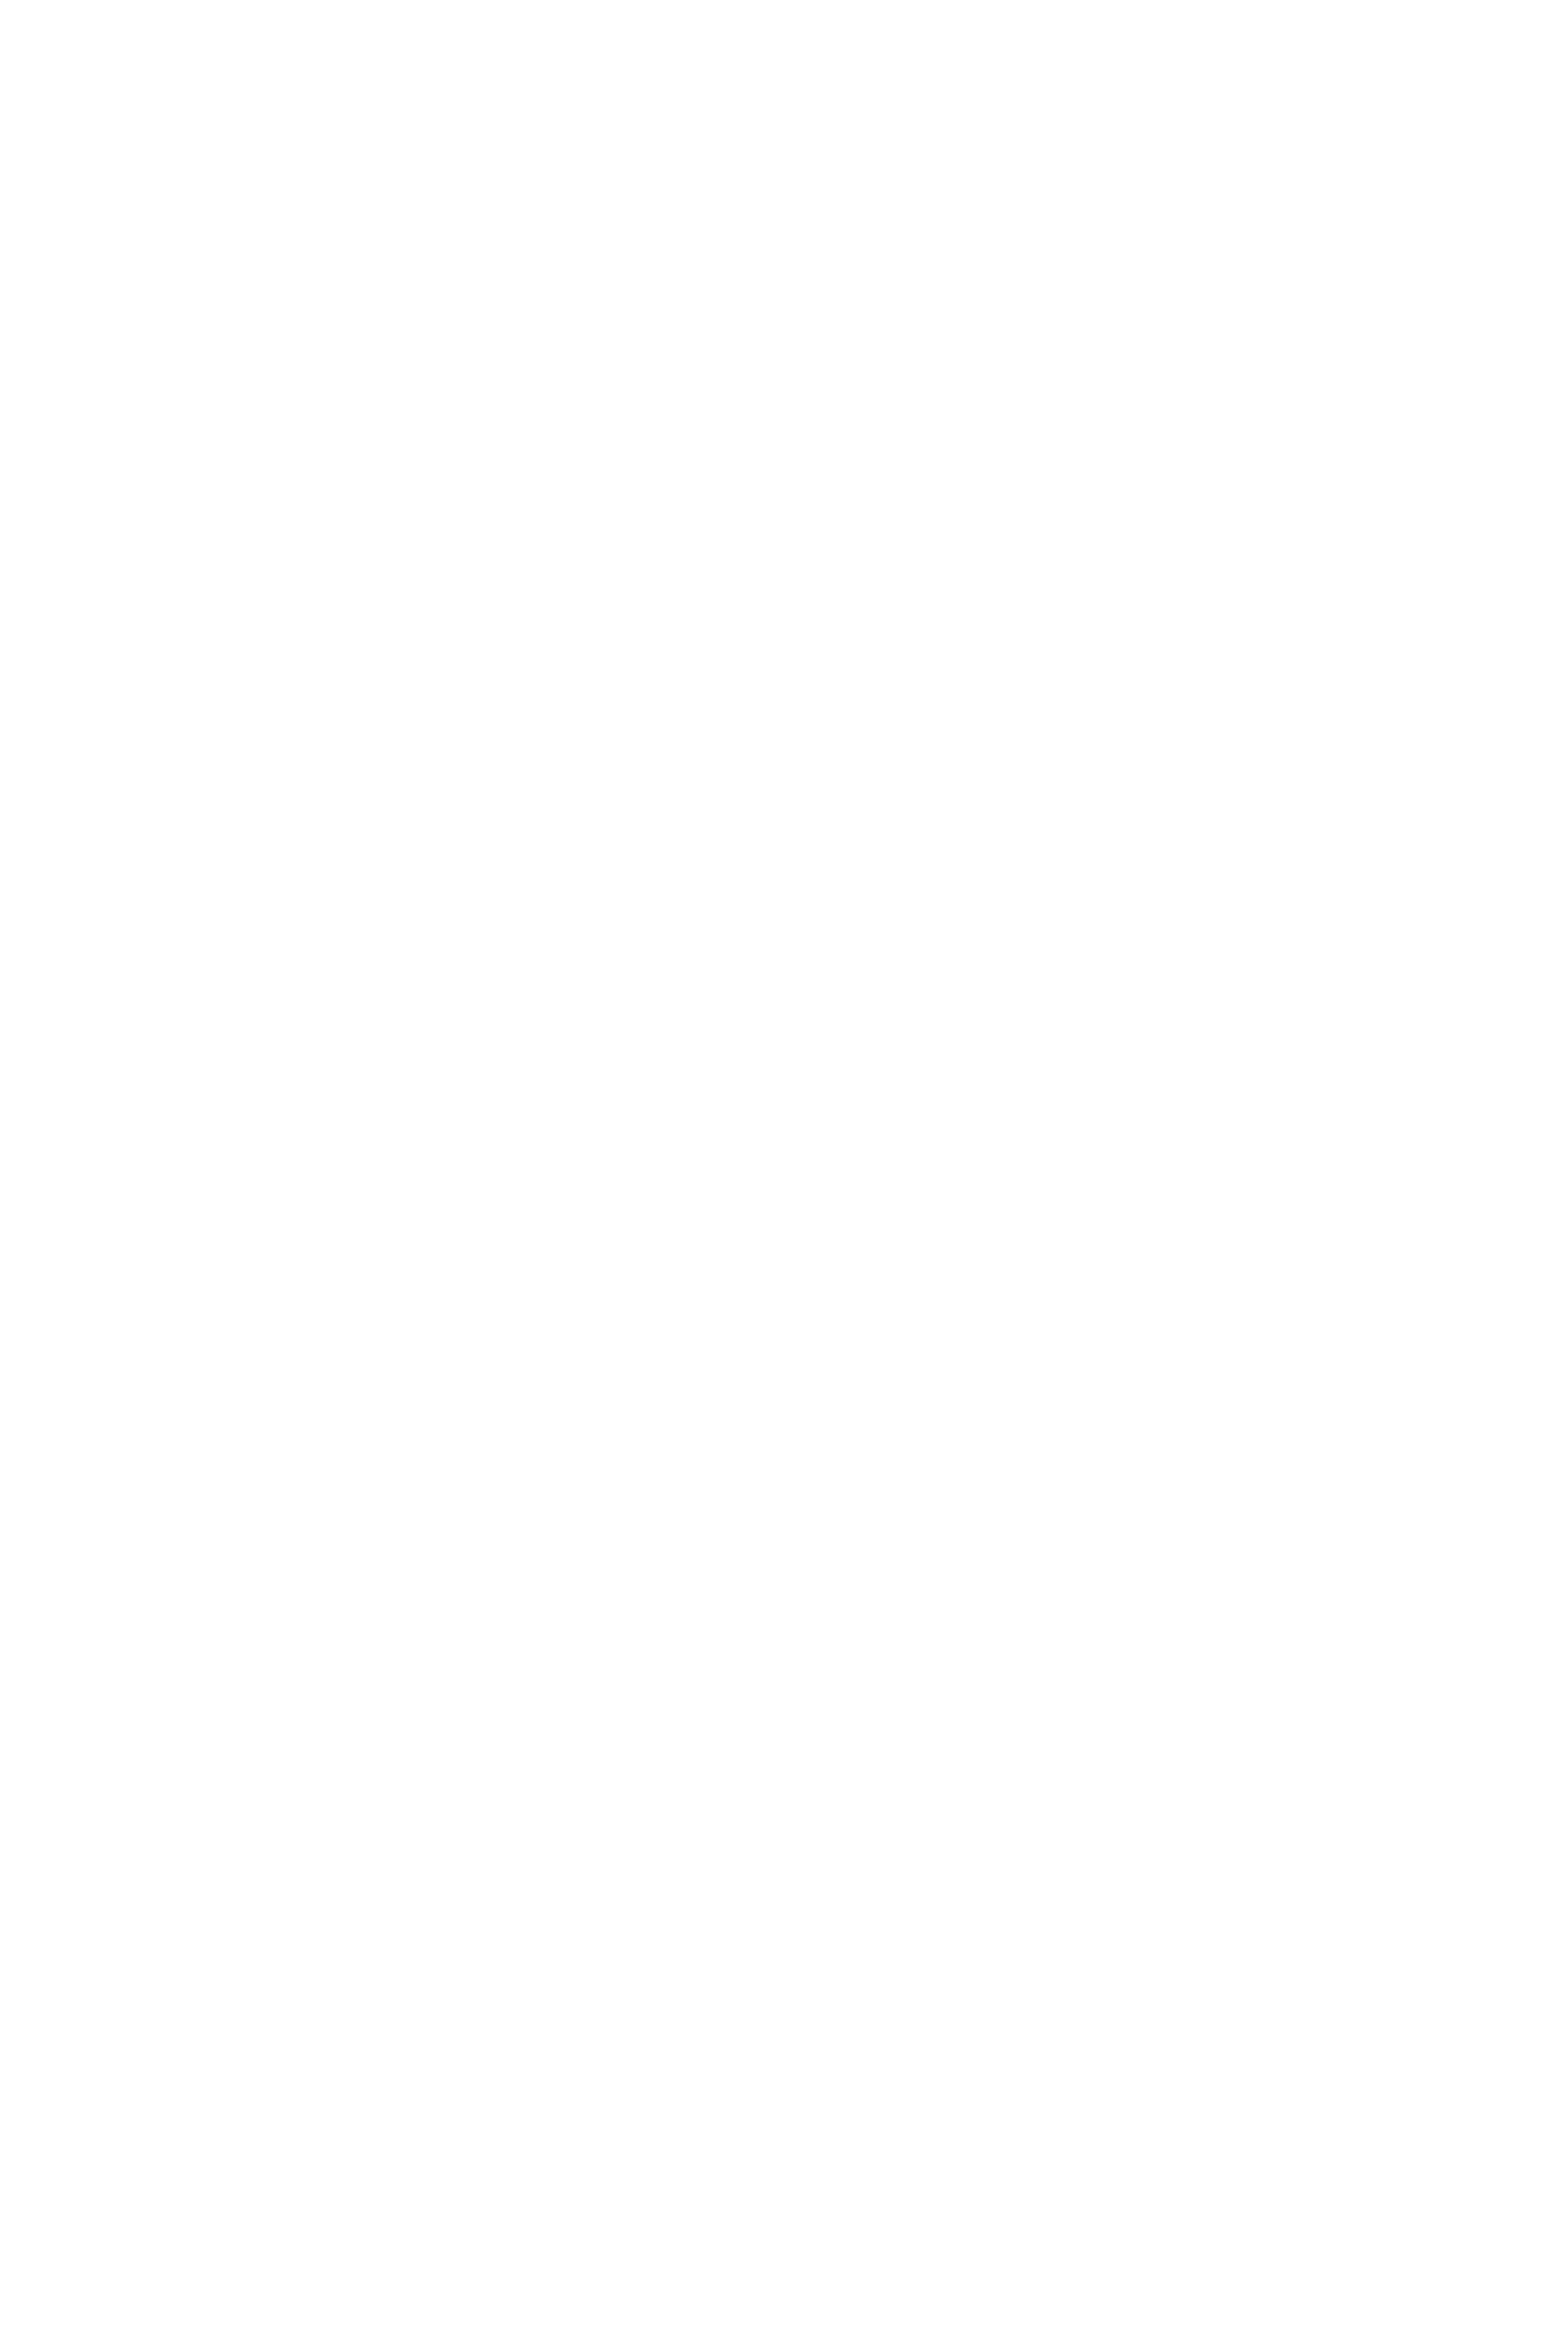 Rewe Familie Gerke